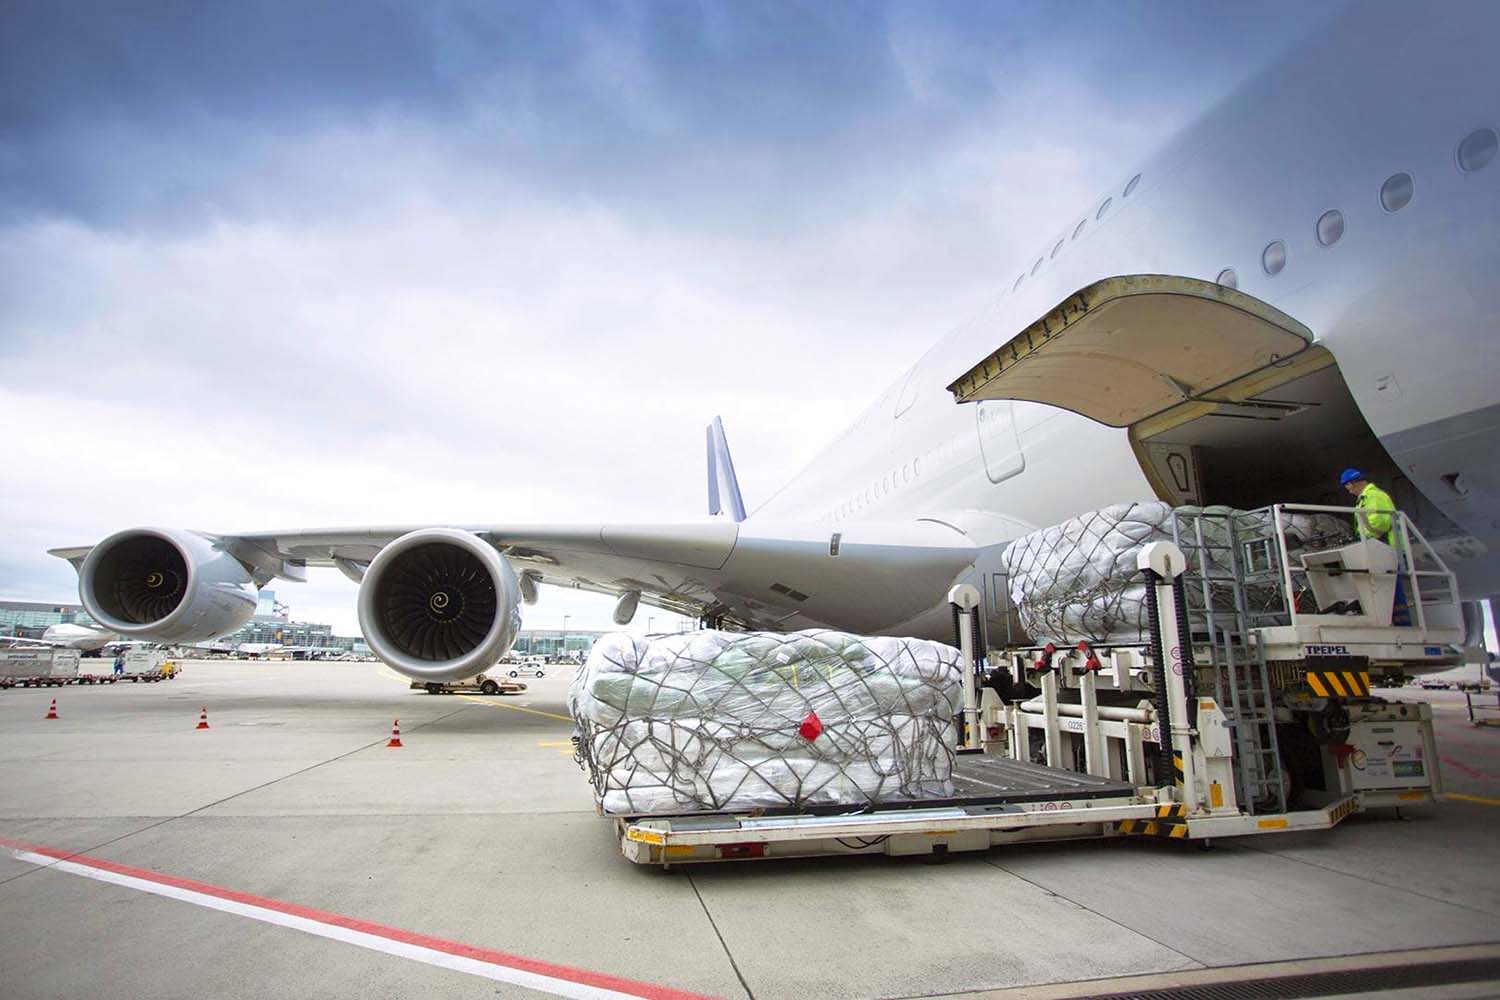 Vận chuyển hàng hóa bằng đường hàng không đang chiếm khoảng 25 - 30% tổng giá trị xuất khẩu của cả nước